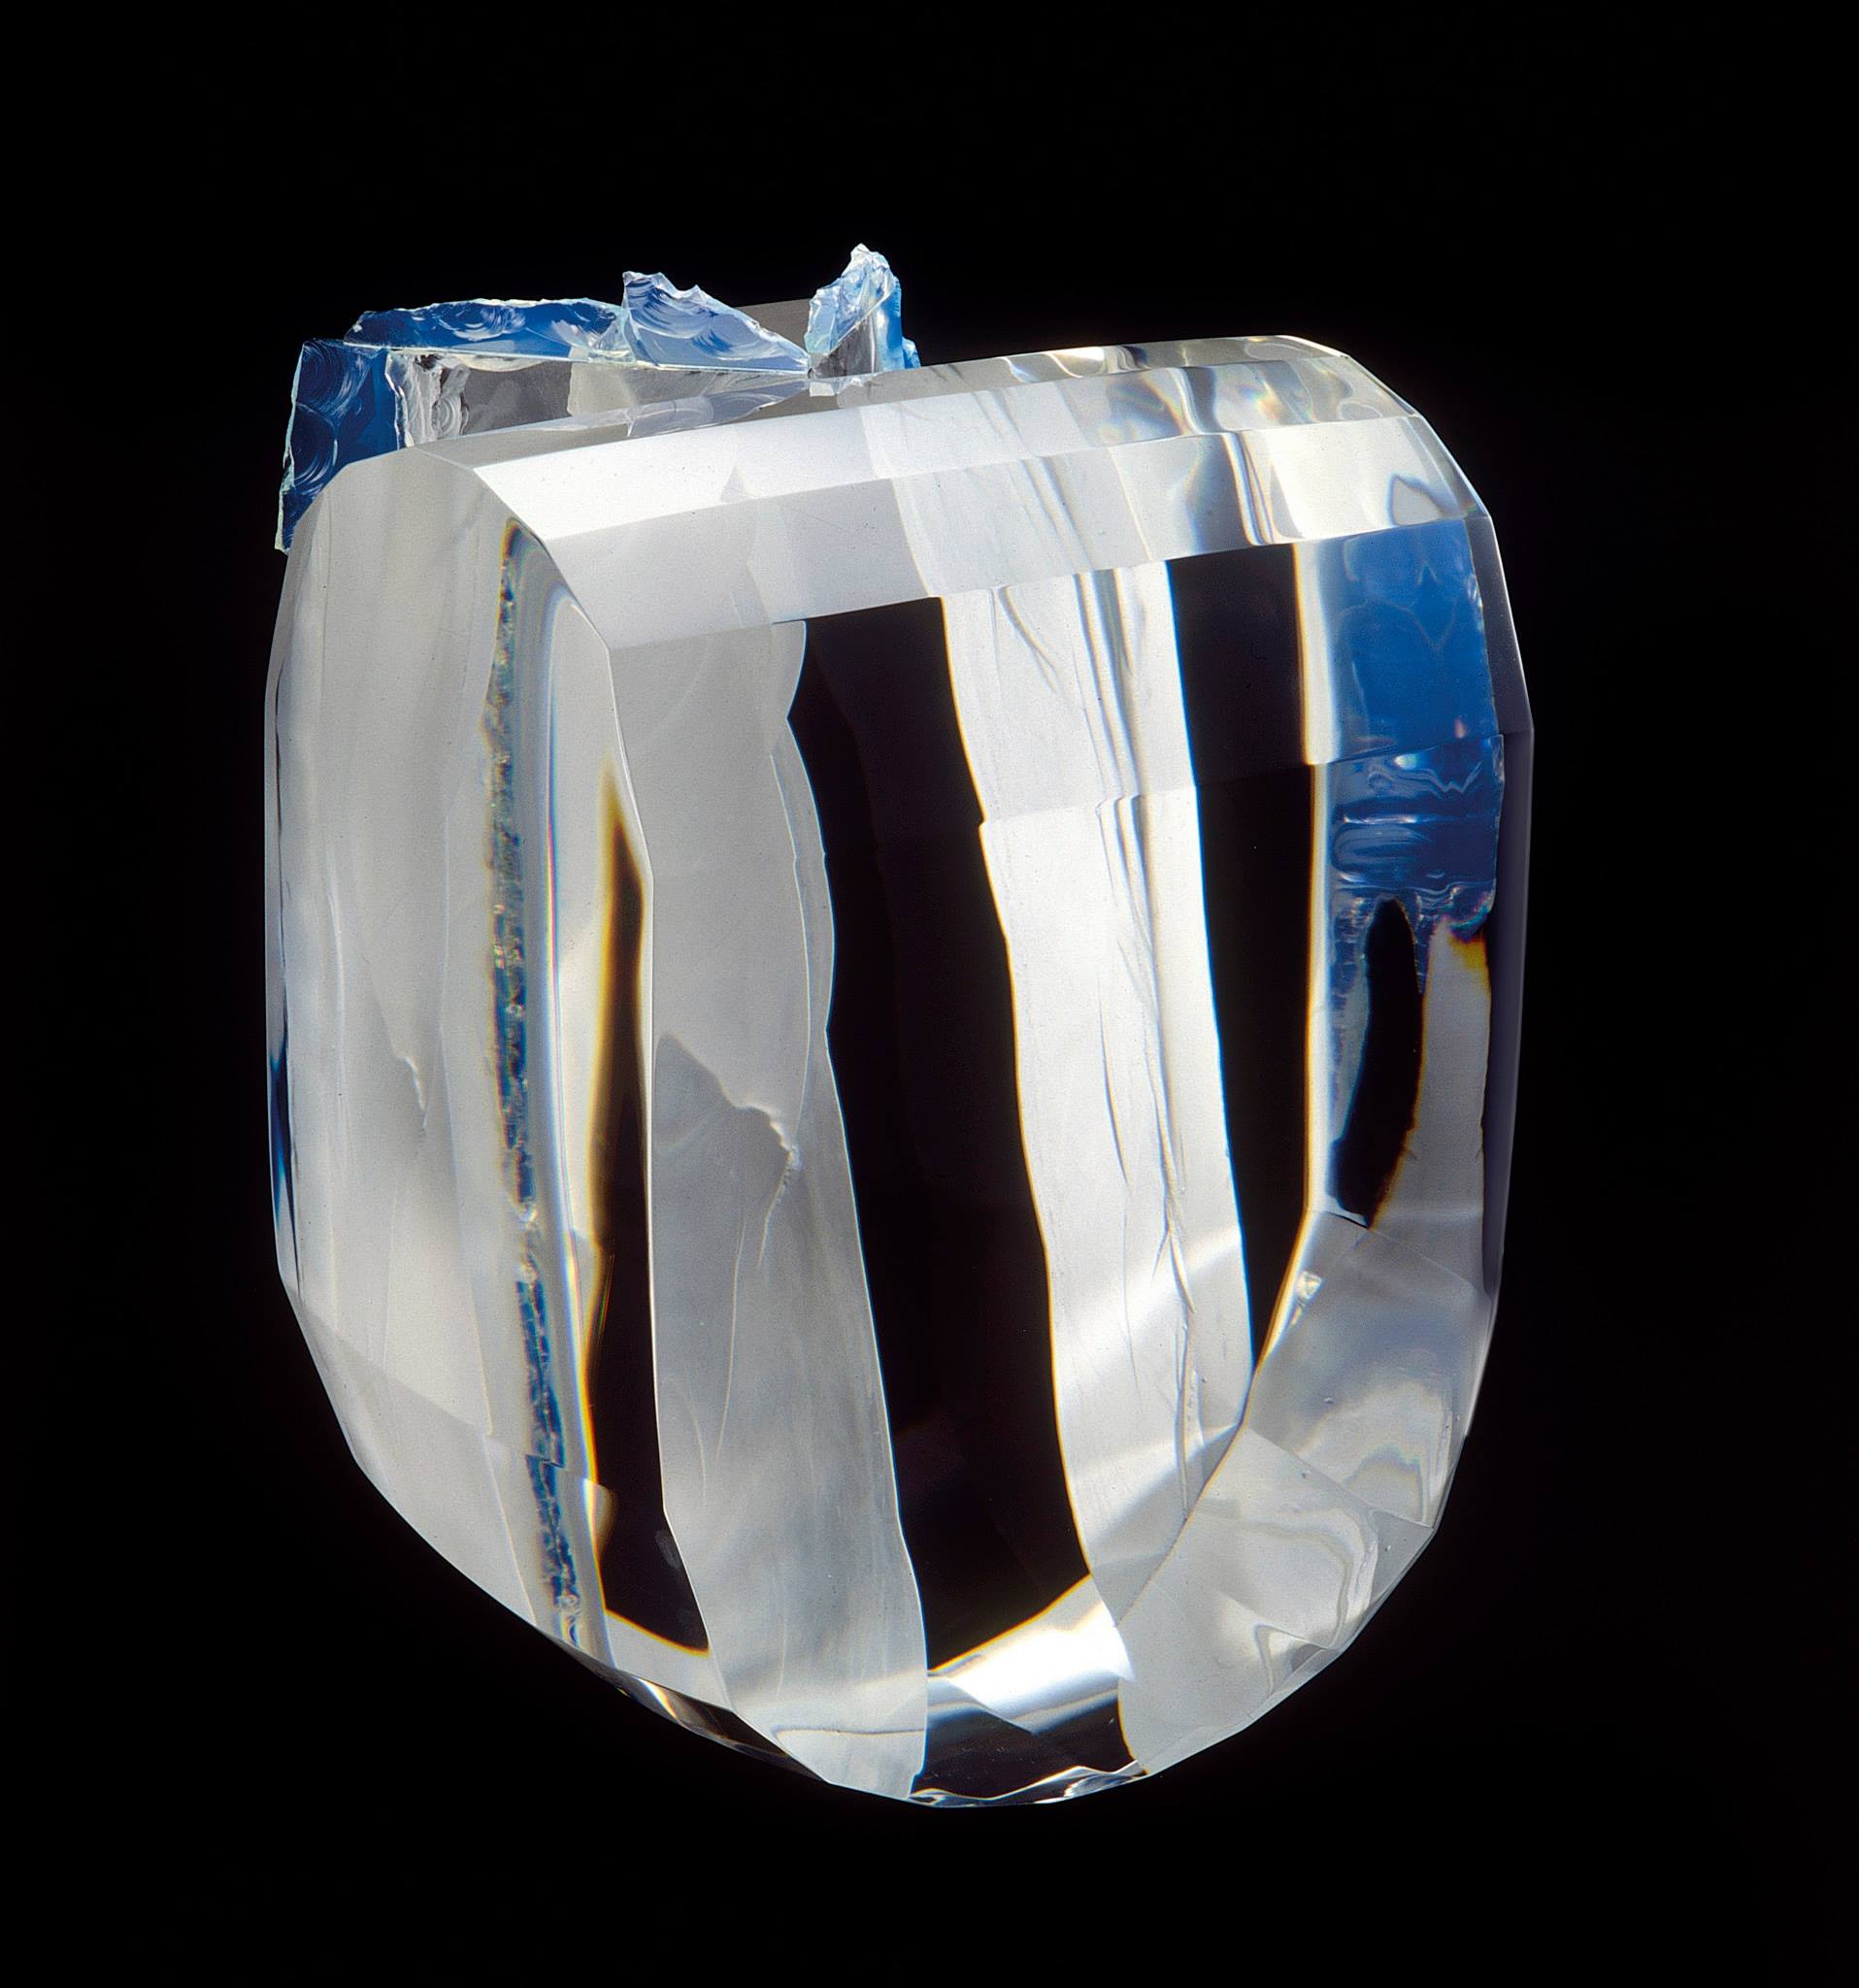 V. Klein - Studio glass, 1994